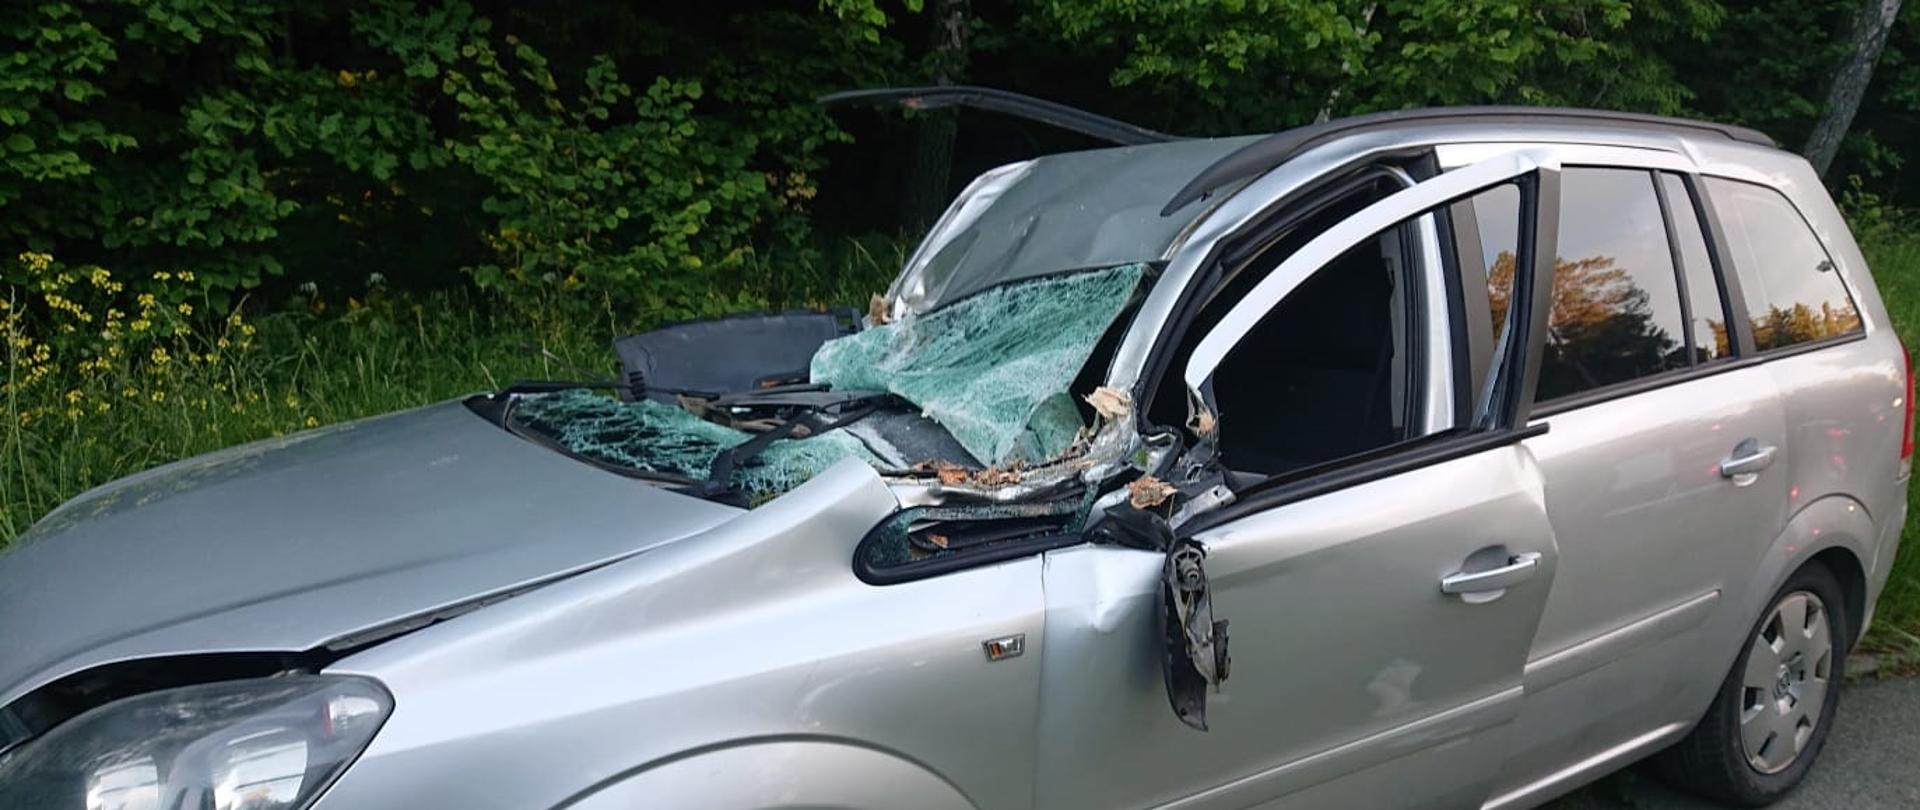 Zdjęcie obrazuje uszkodzony samochód osobowy o jasnym kolorze